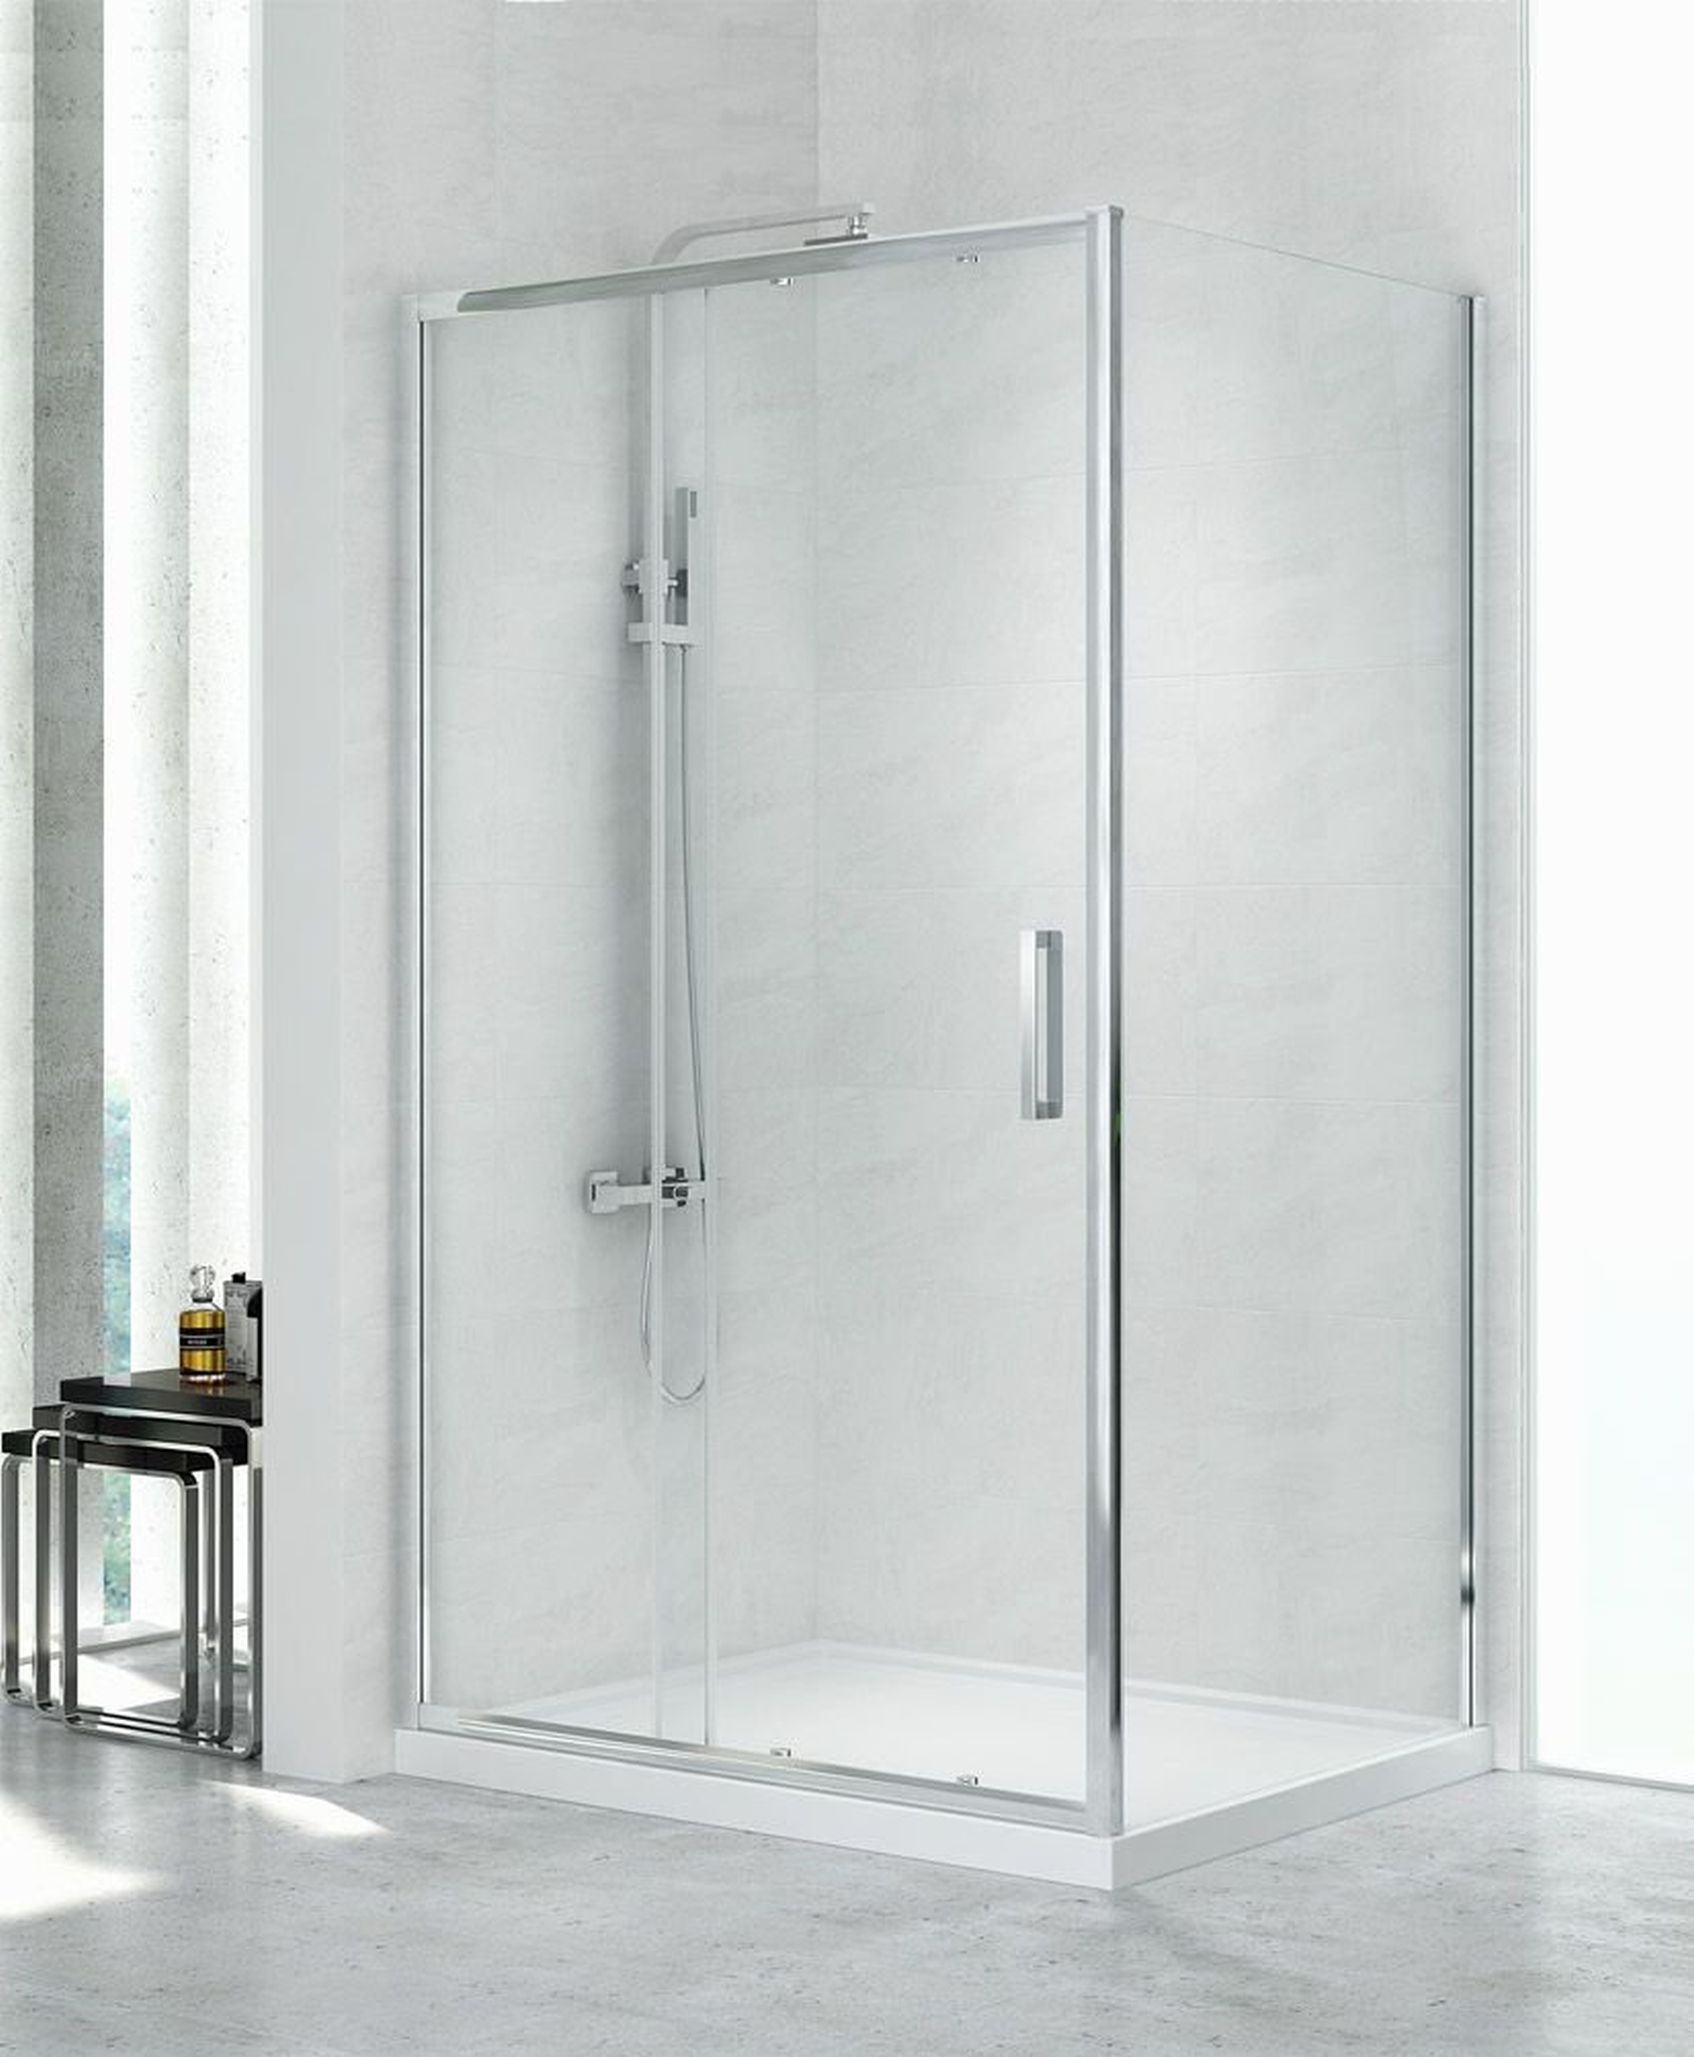 New Trendy New Corrina – kabina prysznicowa i drzwi wnękowe do nowoczesnej łazienki